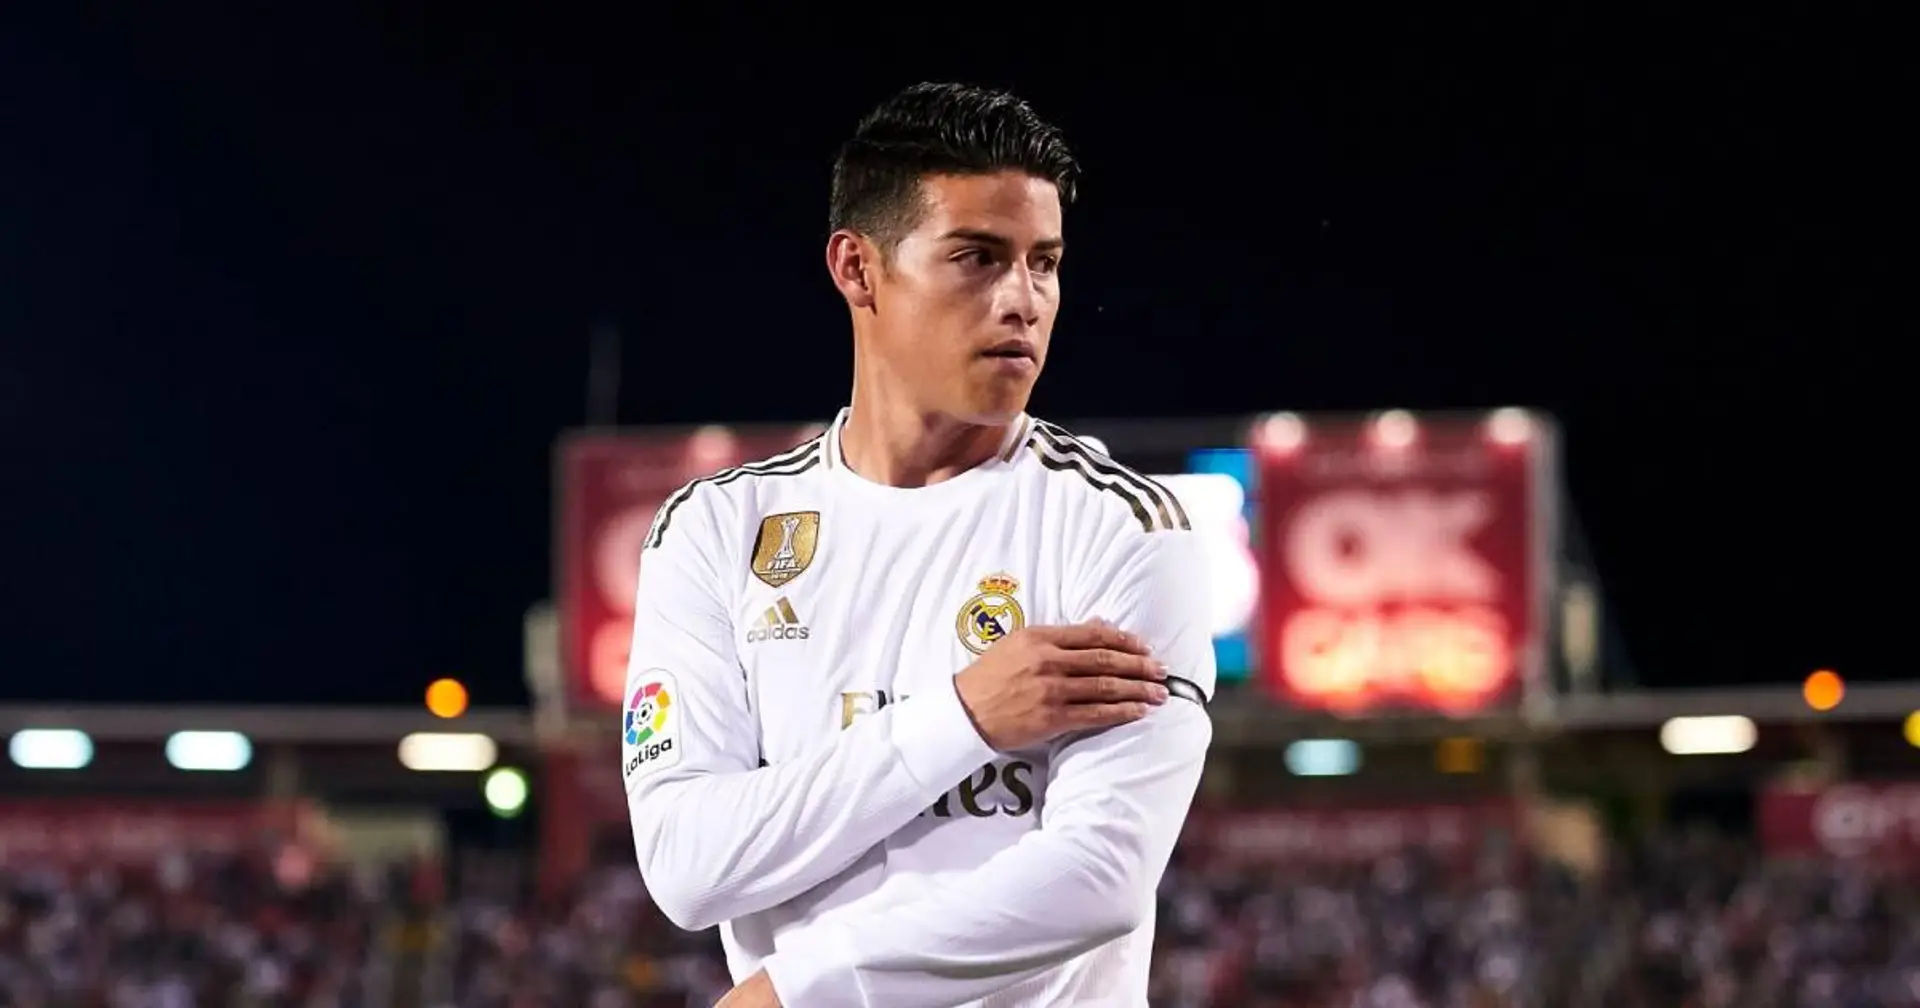 "Personne ne veut plus de moi là-bas": James Rodriguez exclut un retour à Madrid